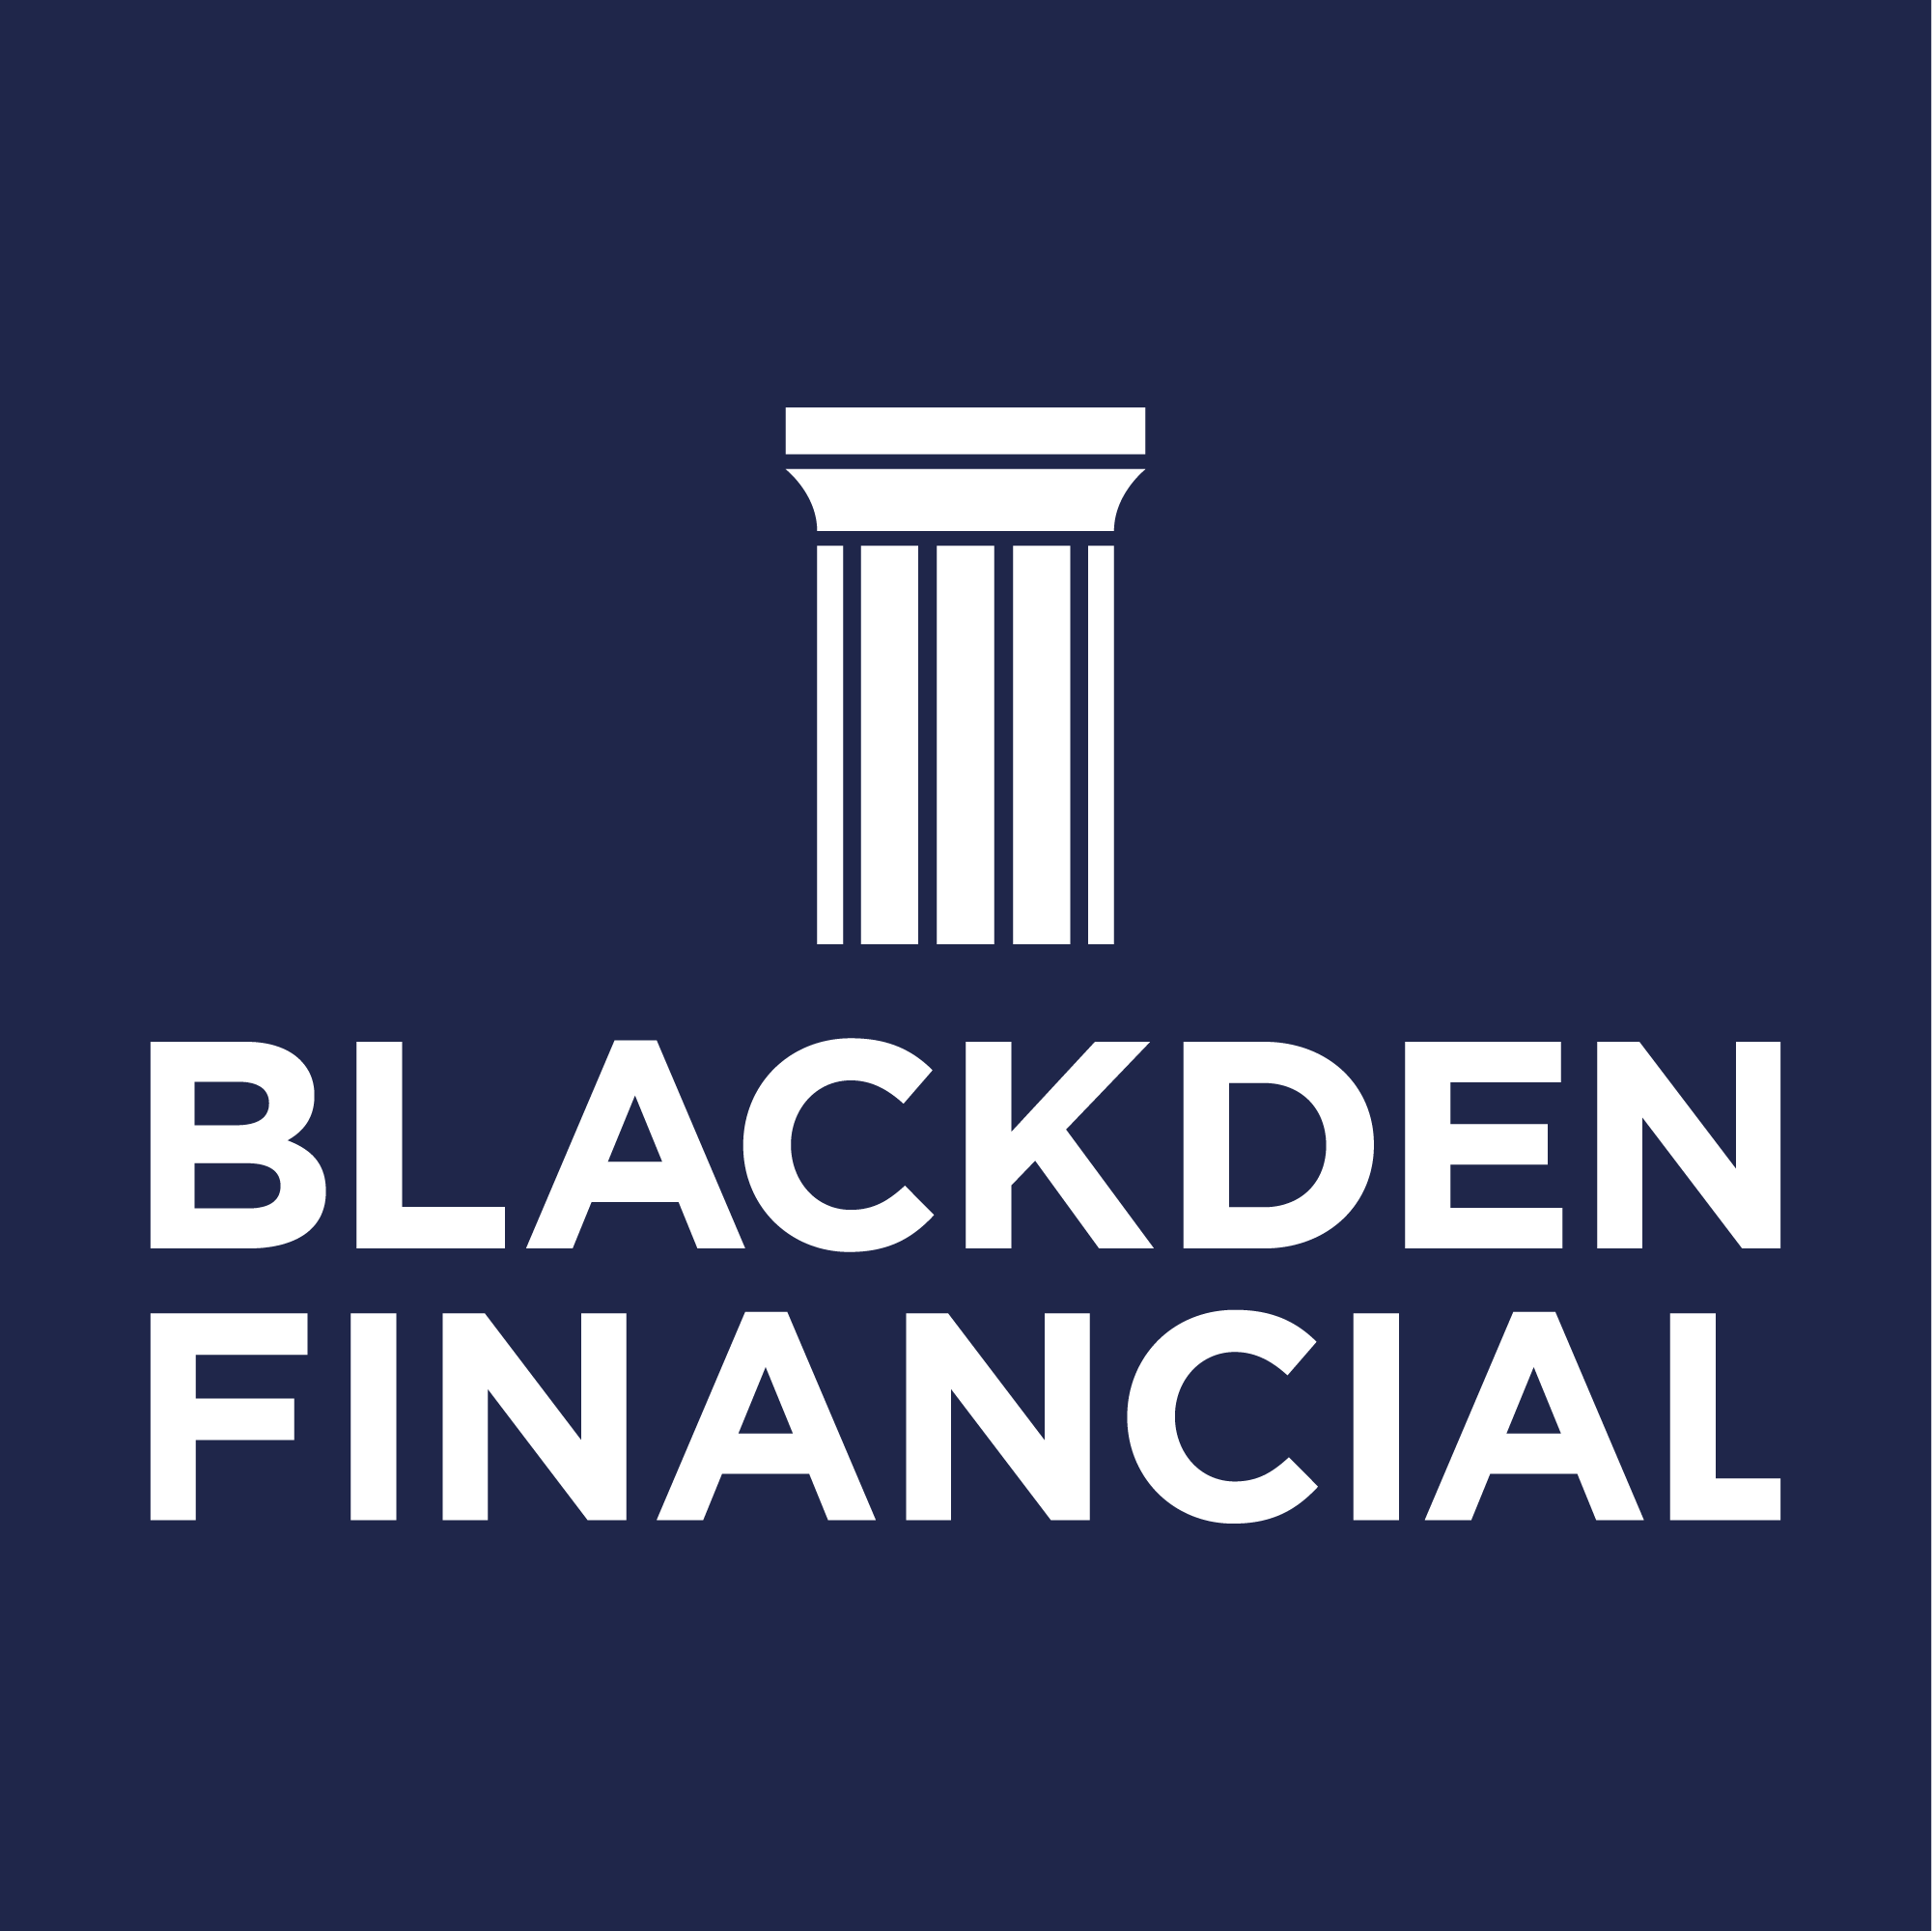 (c) Blackdenfinancial.com